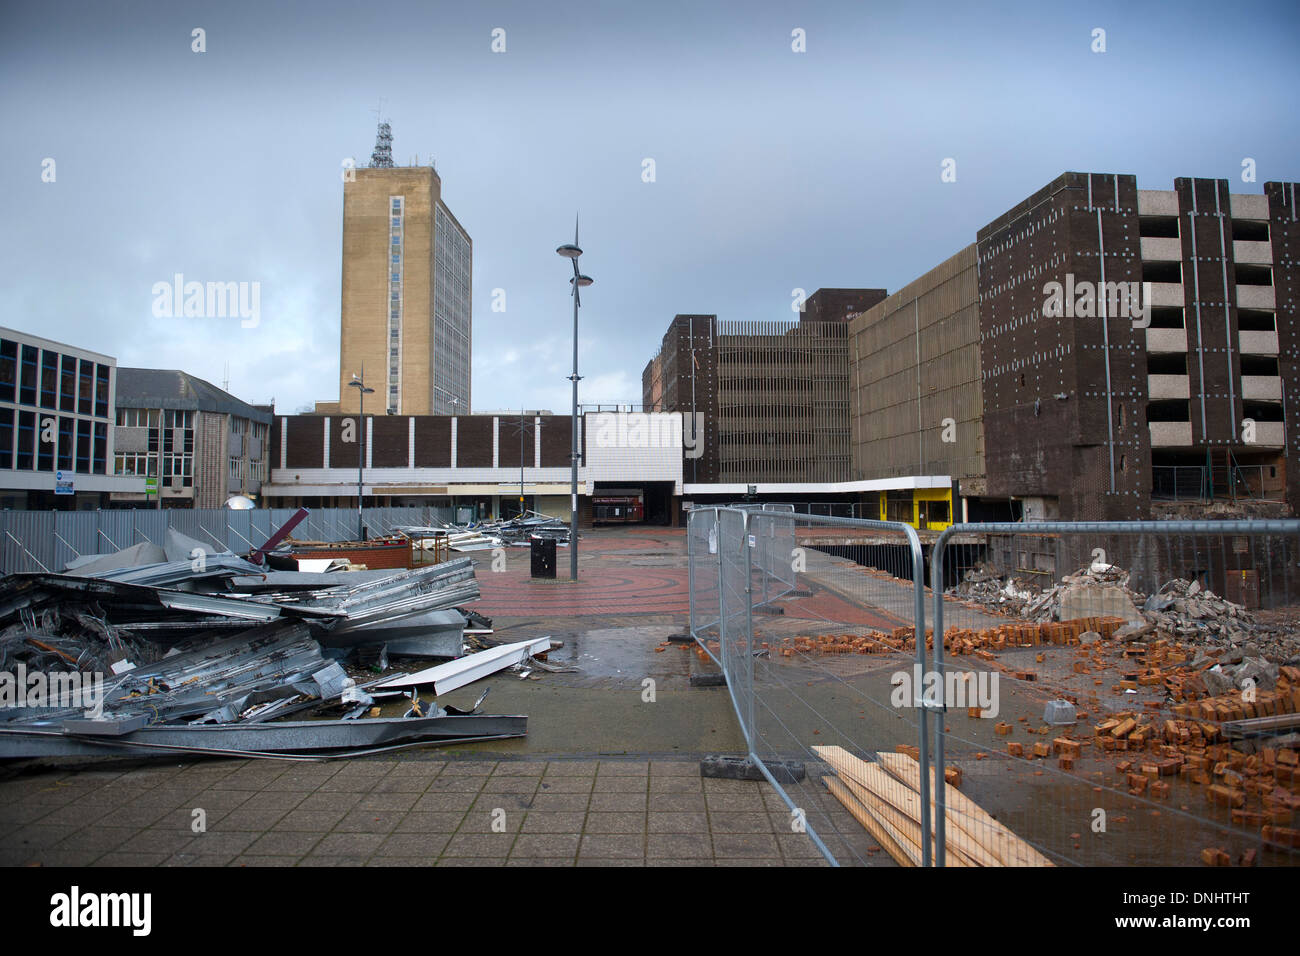 Newport centro città di Newport South Wales prima fu demolita per far posto a un nuovo centro commerciale frati a piedi. Foto Stock